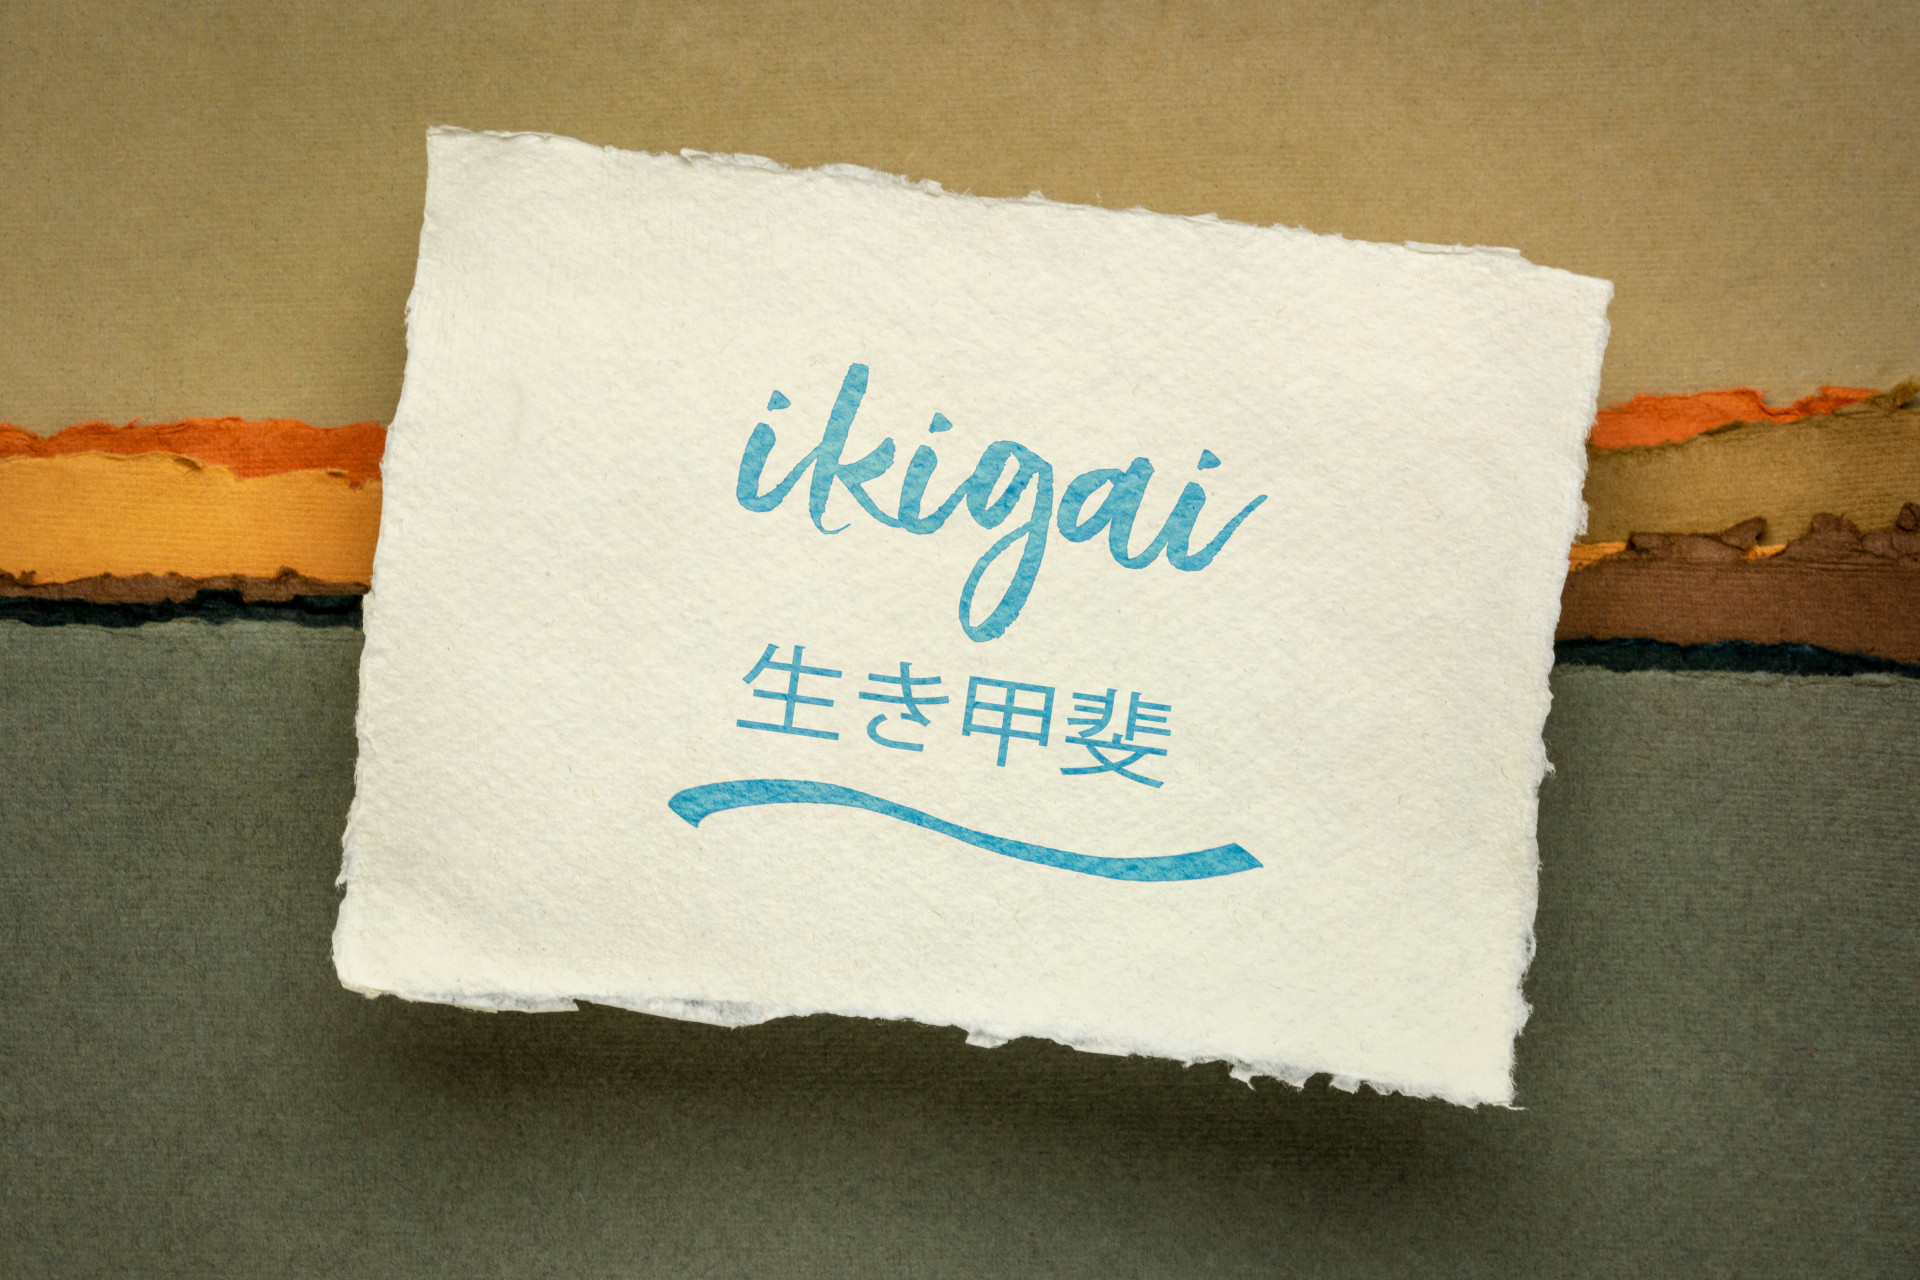 Ikigai - Filosofia japonesa e estilo de vida - uma razão de ser ou uma razão para acordar. (Foto: Divulgação/AdobeStock)